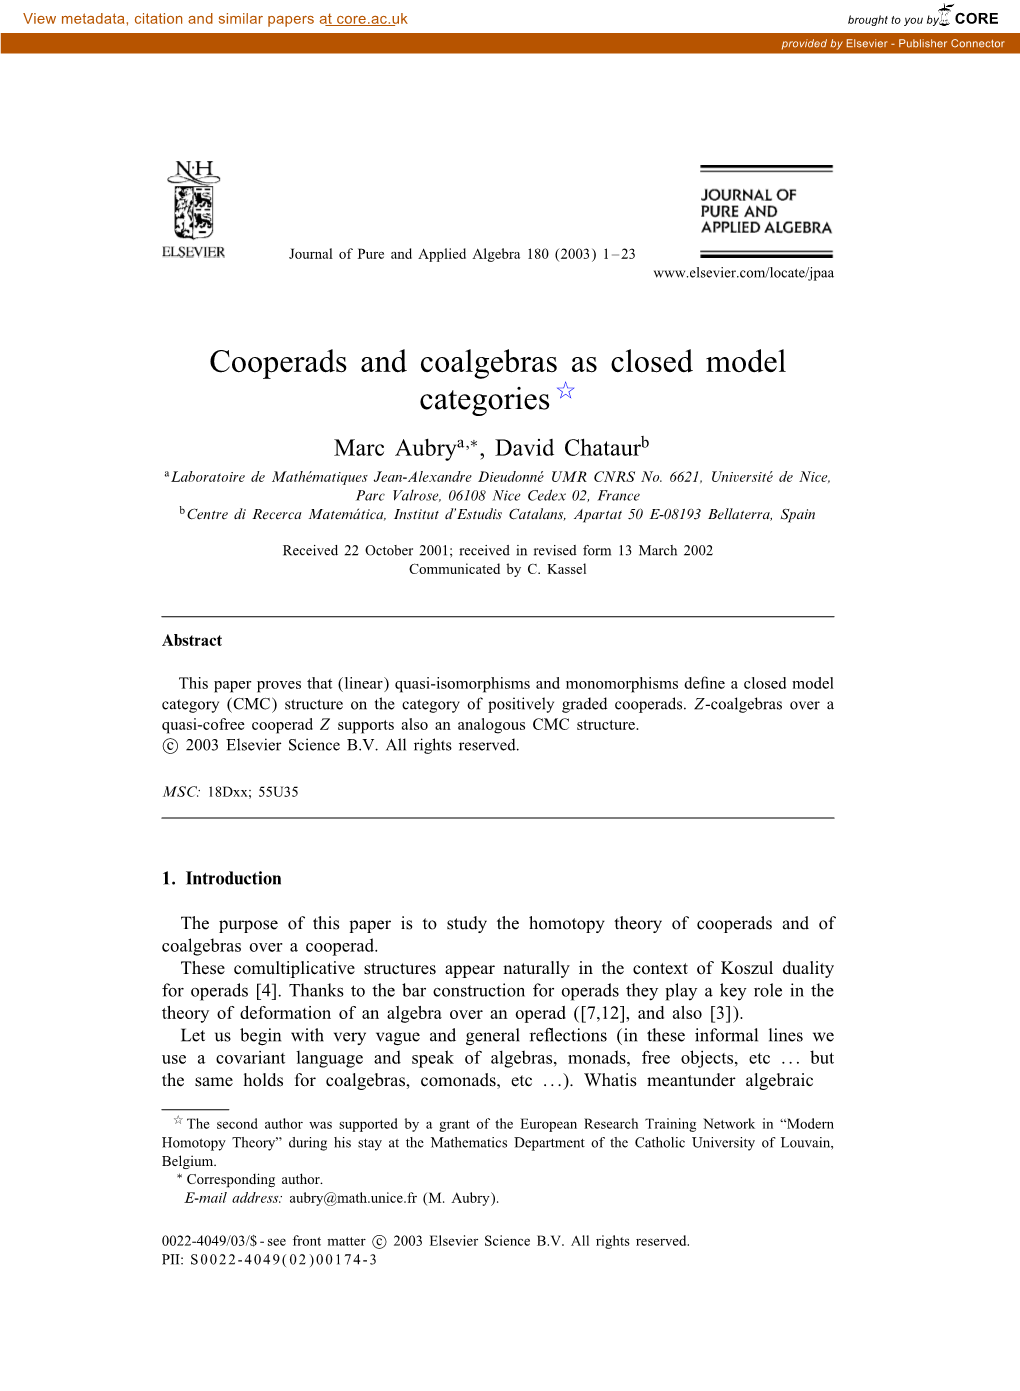 Cooperads and Coalgebras As Closed Model Categories � Marc Aubrya;∗, David Chataurb Alaboratoire De Mathematiquesã Jean-Alexandre Dieudonneã UMR CNRS No